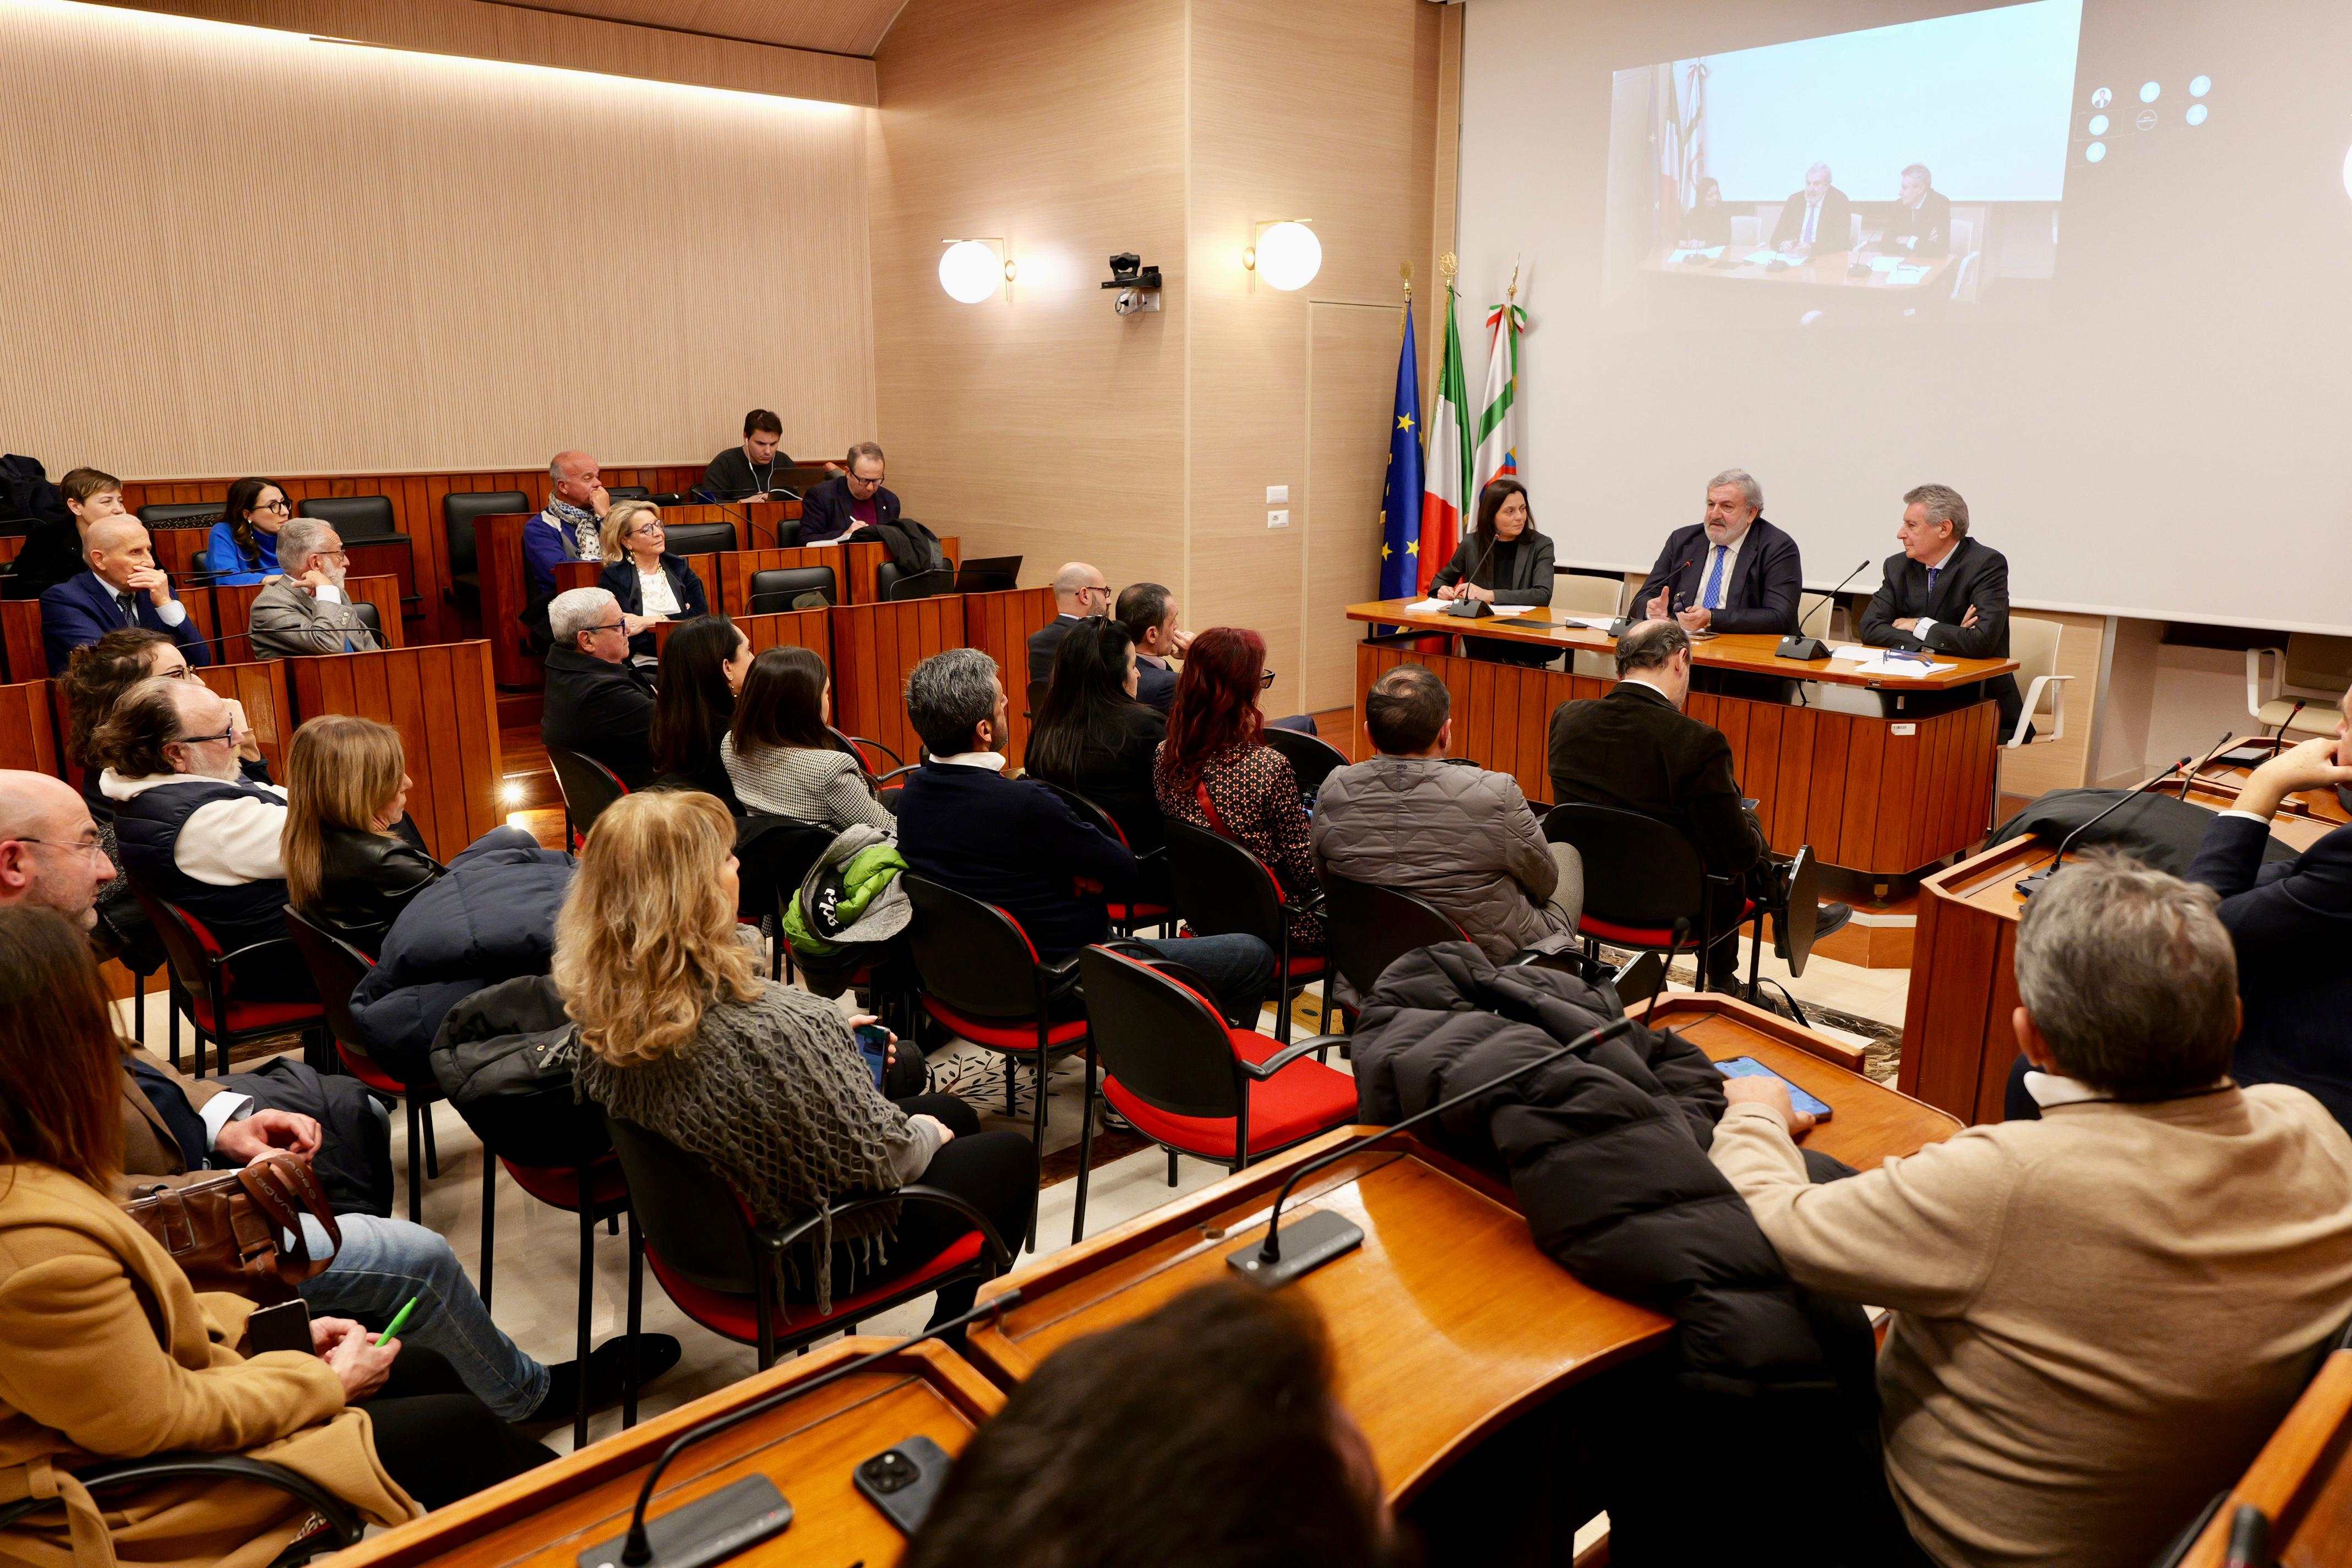 Galleria Premio Giorgio Ambrosoli e Regione Puglia per promuovere lo stato di diritto in funzione dello sviluppo economico e sociale - Diapositiva 3 di 8